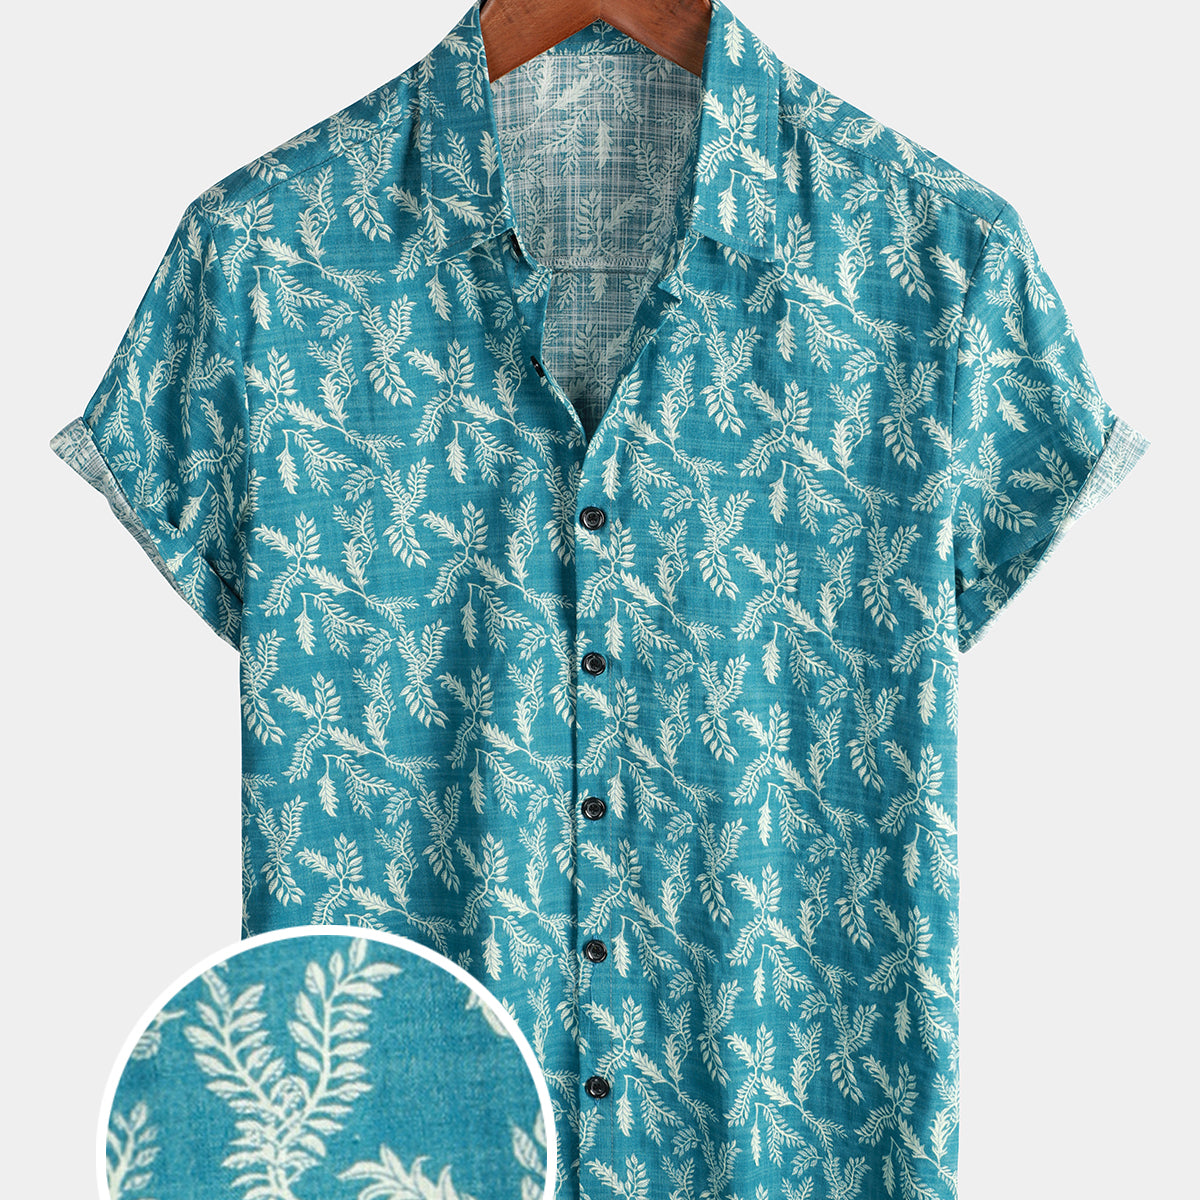 Camisa con botones transpirable de manga corta para playa de algodón para vacaciones con flores retro y estampado floral azul para hombre